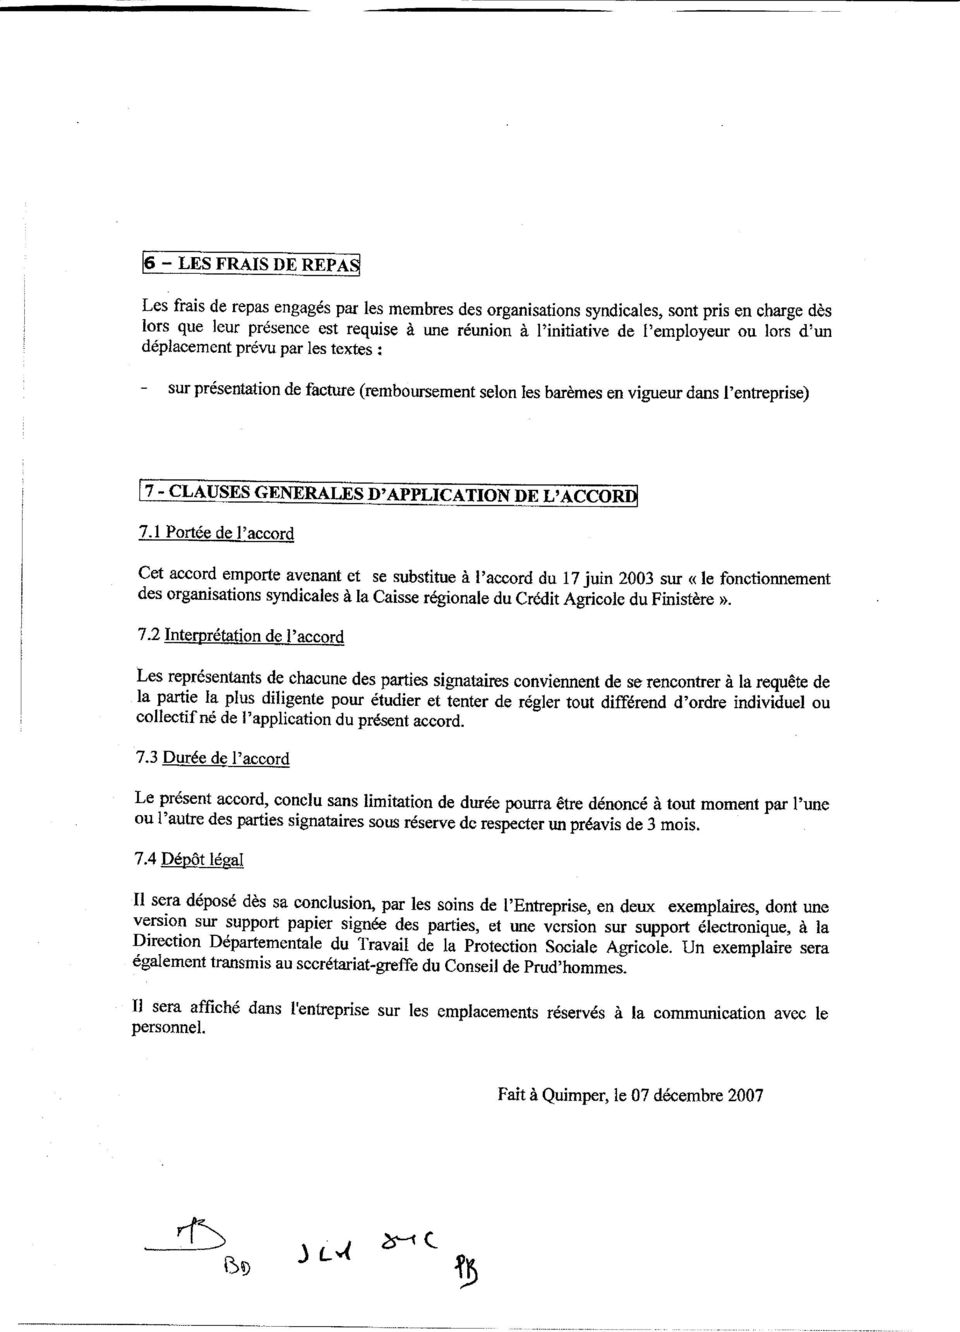 e- l'accold Cet accord emporte avenant et se zubstitue à l'accord du 17 juin 2003 sur < le fonctionnement des organisationsyndicales à Ia Caisse regionale du Crédit Agricole du Finistère >. 7.